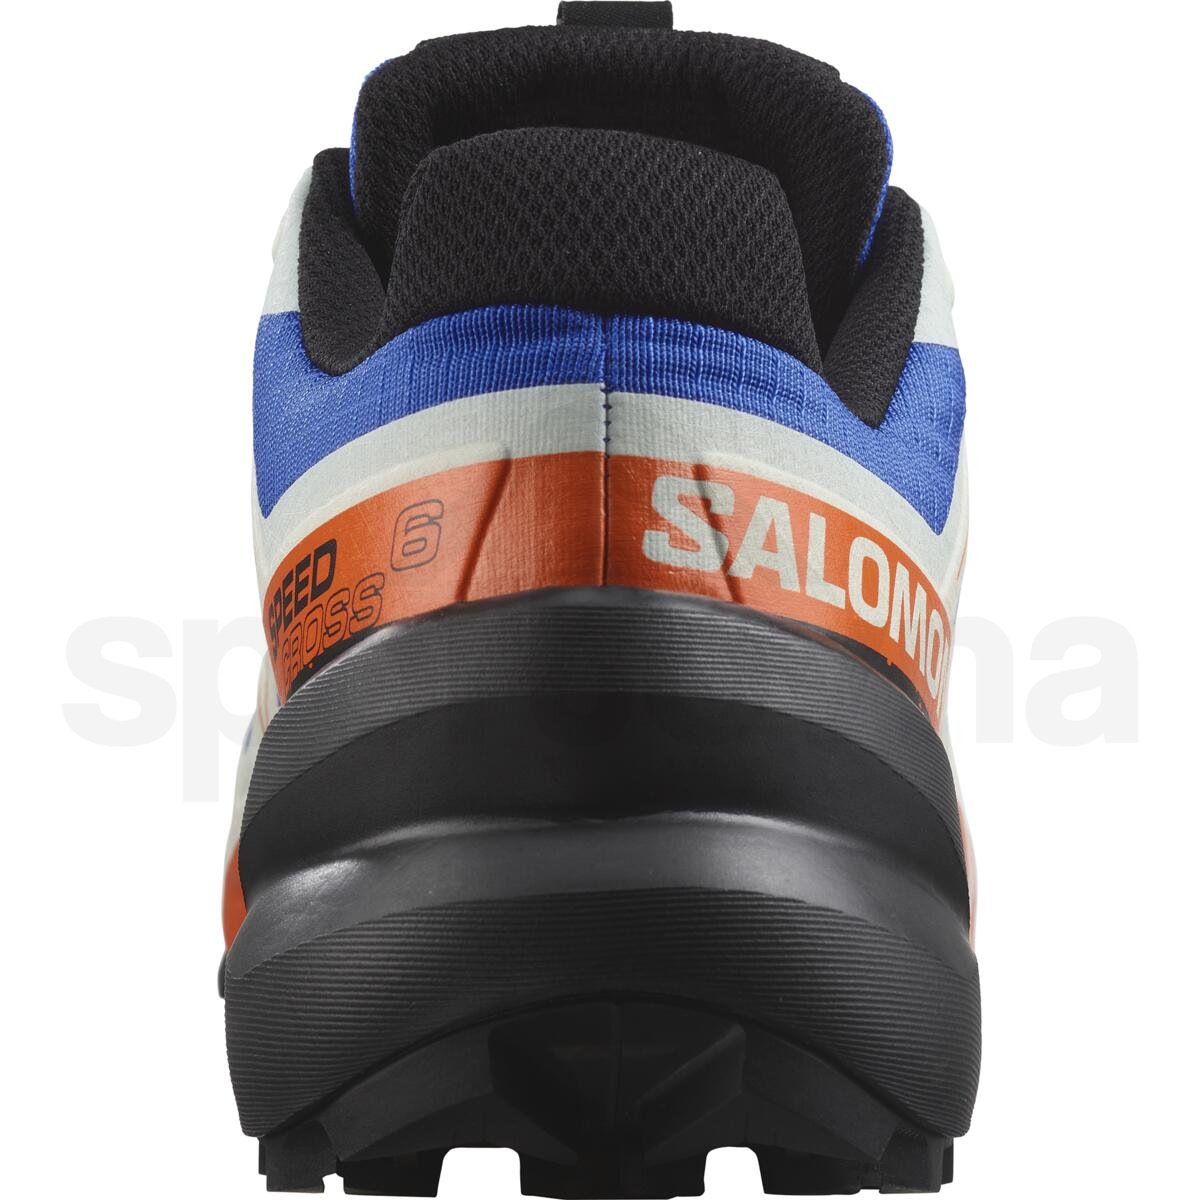 Obuv Salomon Speedcross 6 M - modrá/bílá